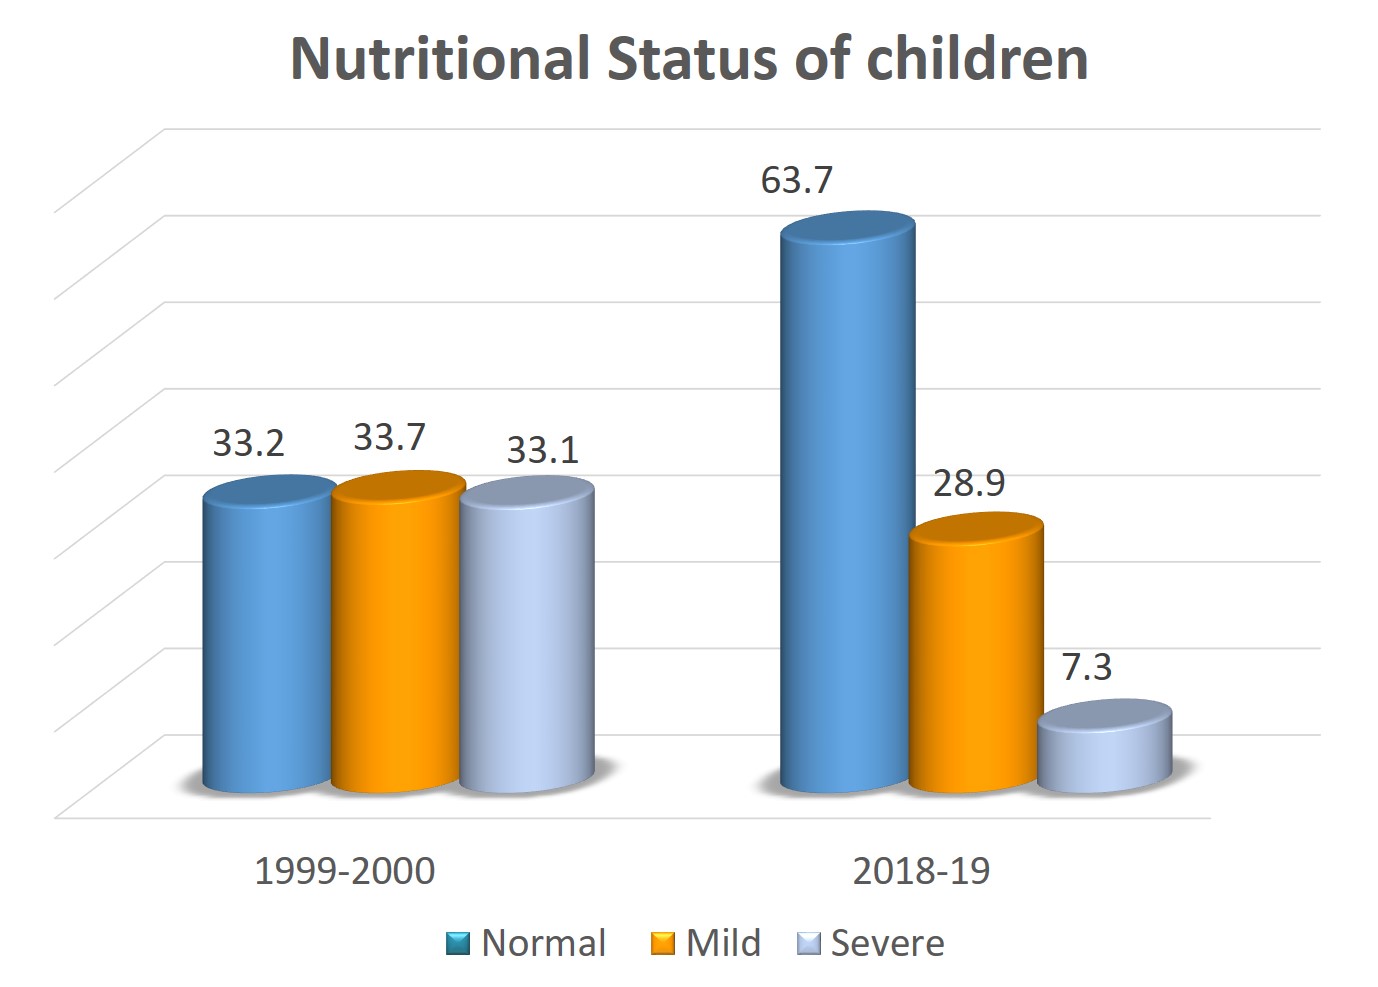 Nutritonal status of children aged 0 to 5 years